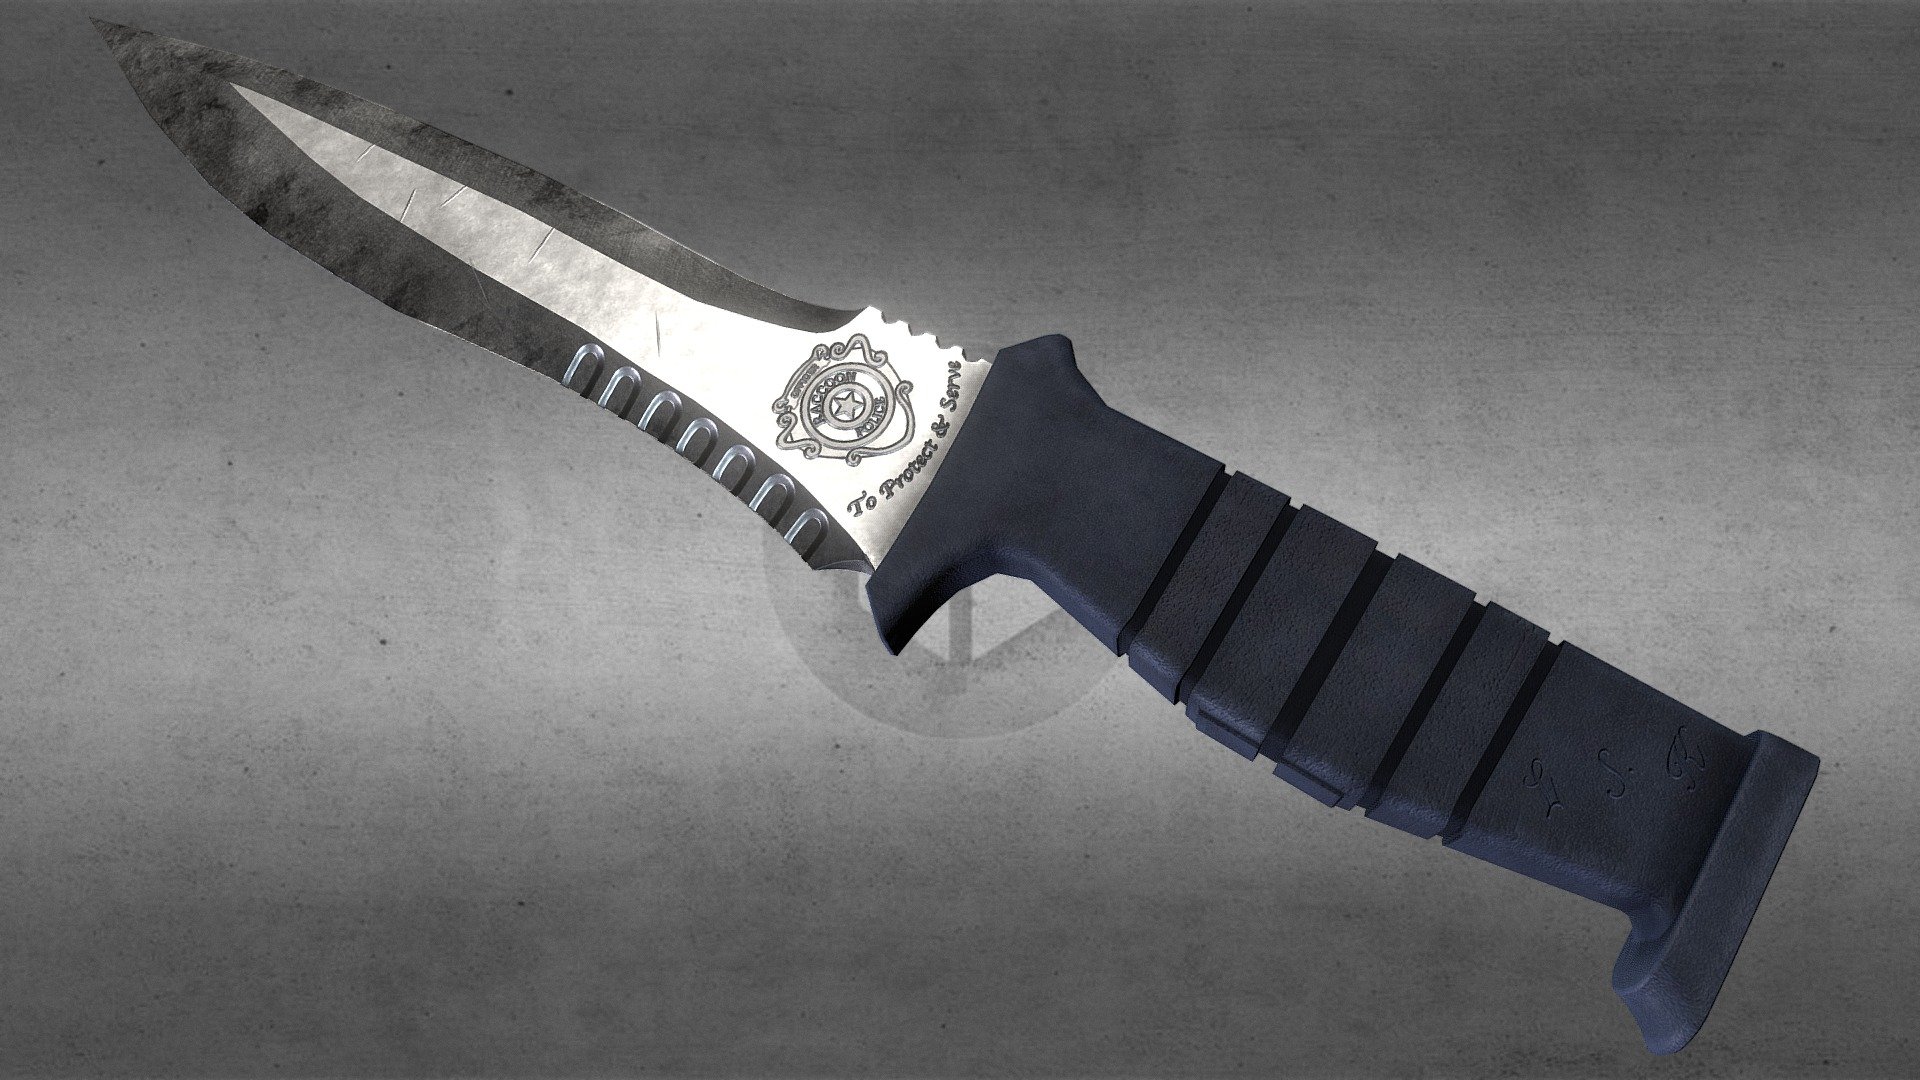 Leon S. Kennedy Knife - 3D model by eriktheking.